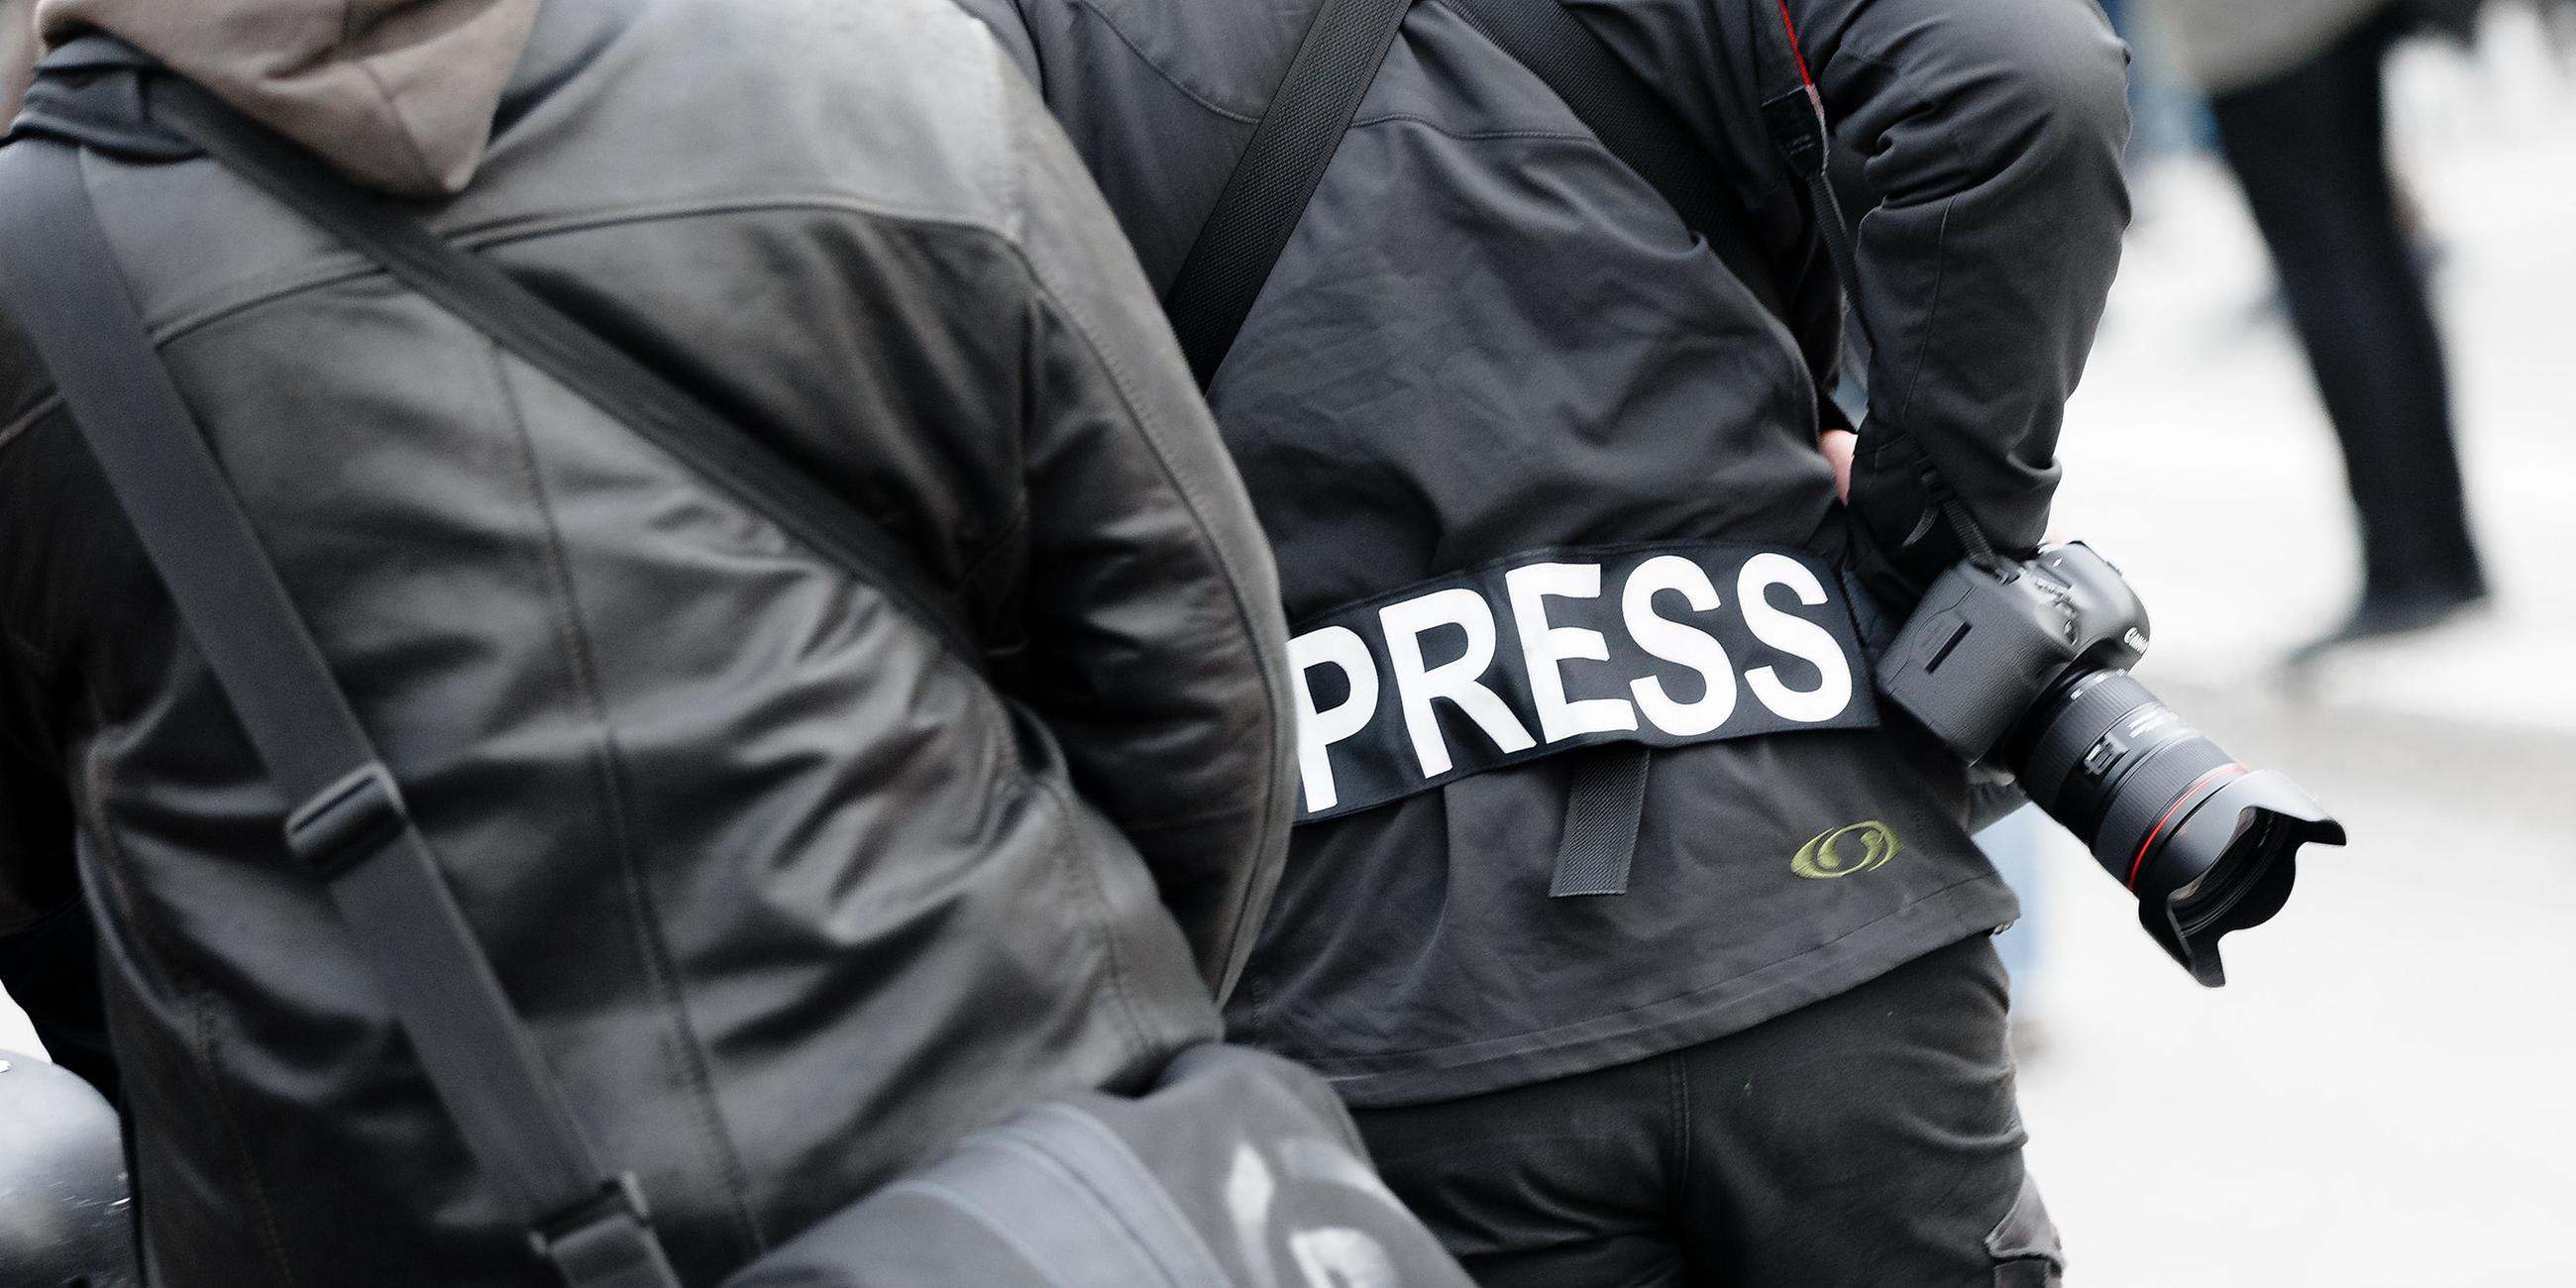 Ein Fotoreporter trägt bei einer Demonstration einen Aufnäher auf seiner Jacke mit dem Wort "PRESS". (Archiv)